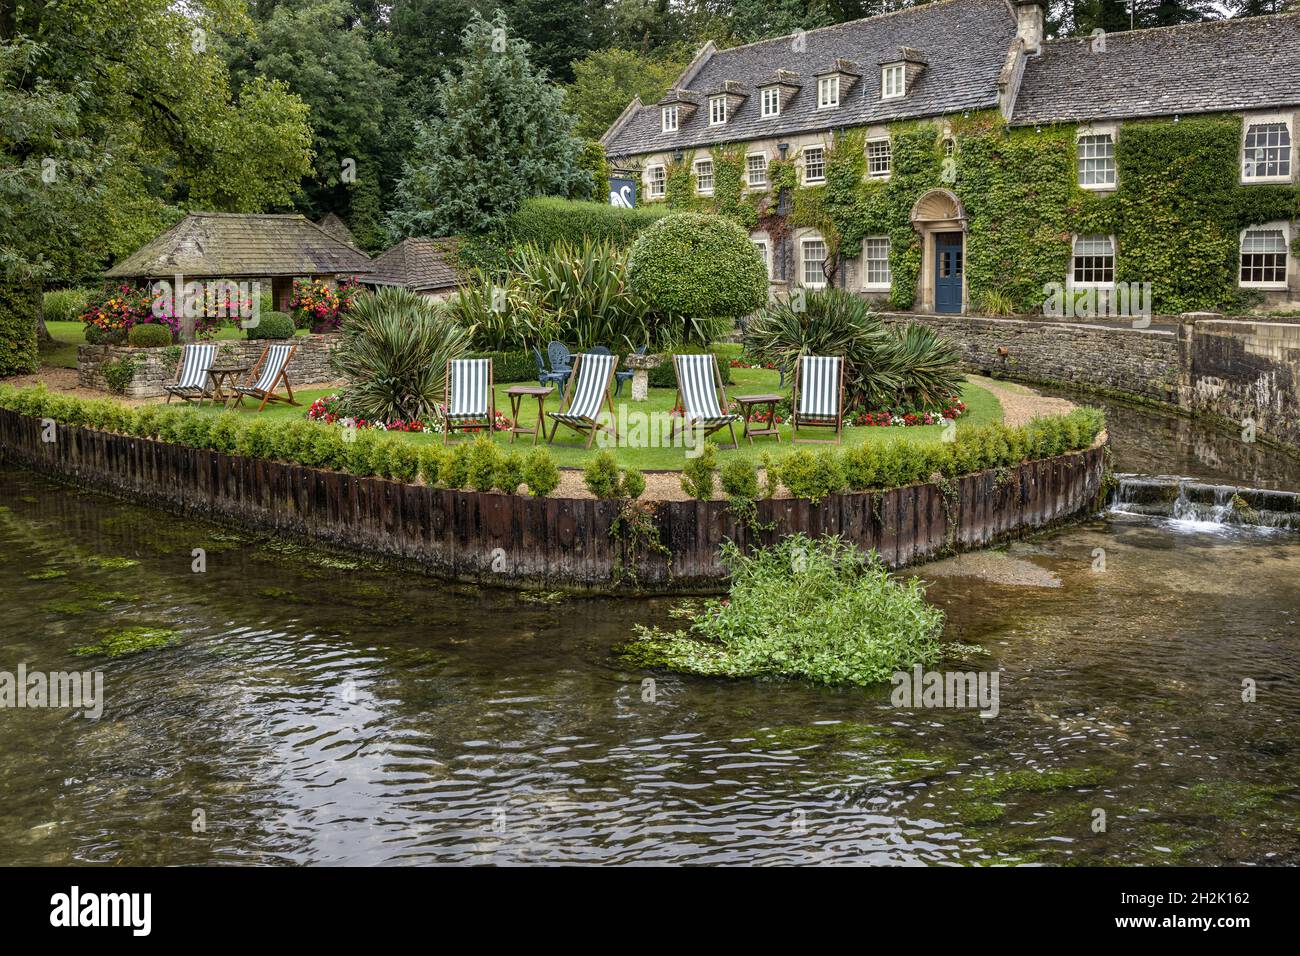 Der hübsch angelegte Garten des efeubedeckten Swan Hotels im malerischen Dorf Bibury in Gloucestershire Cotswolds, England. Stockfoto